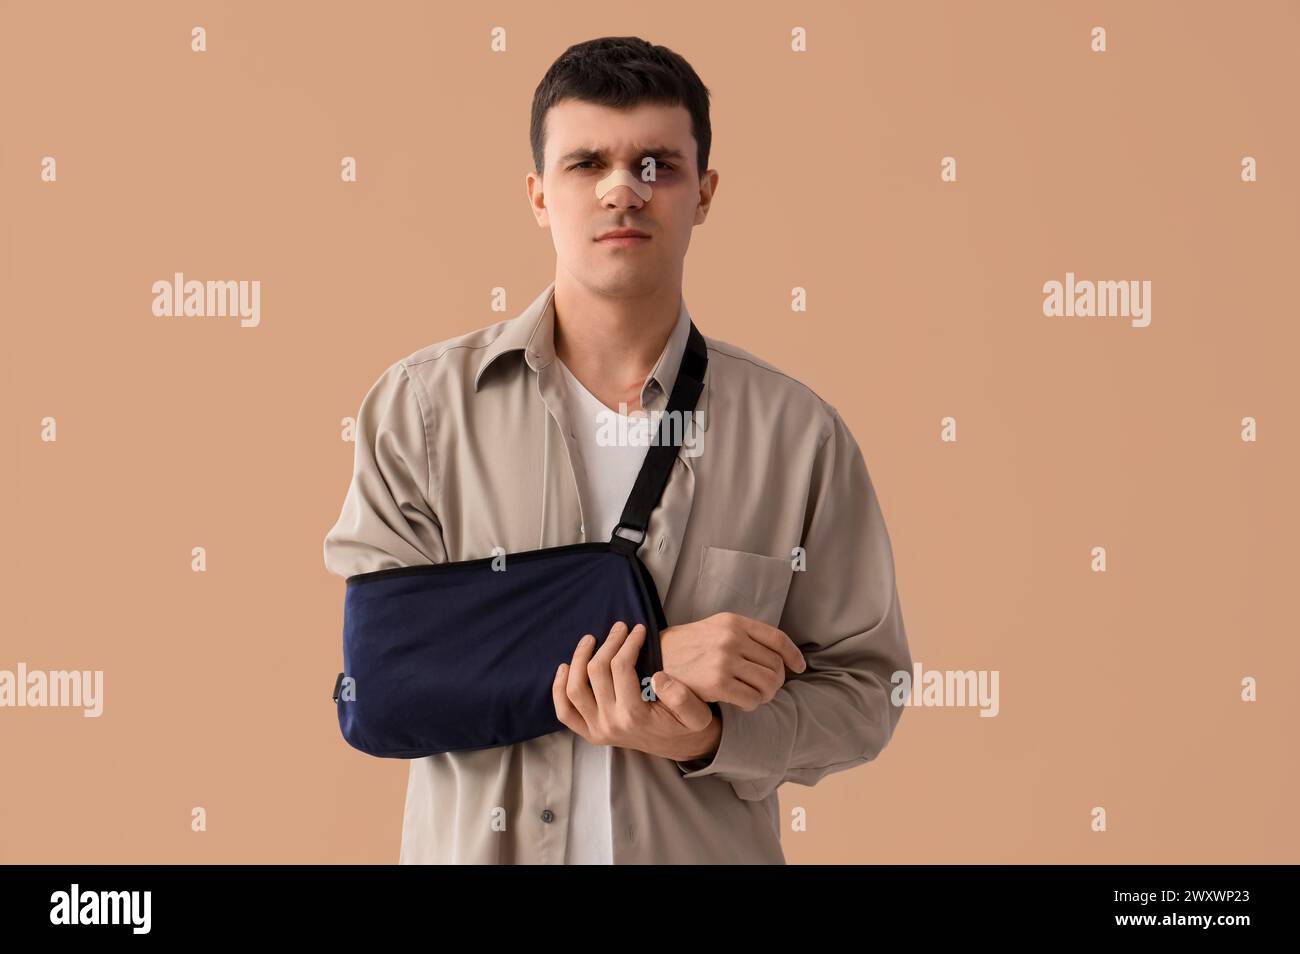 Jeune homme blessé après un accident avec bras cassé sur fond beige Banque D'Images